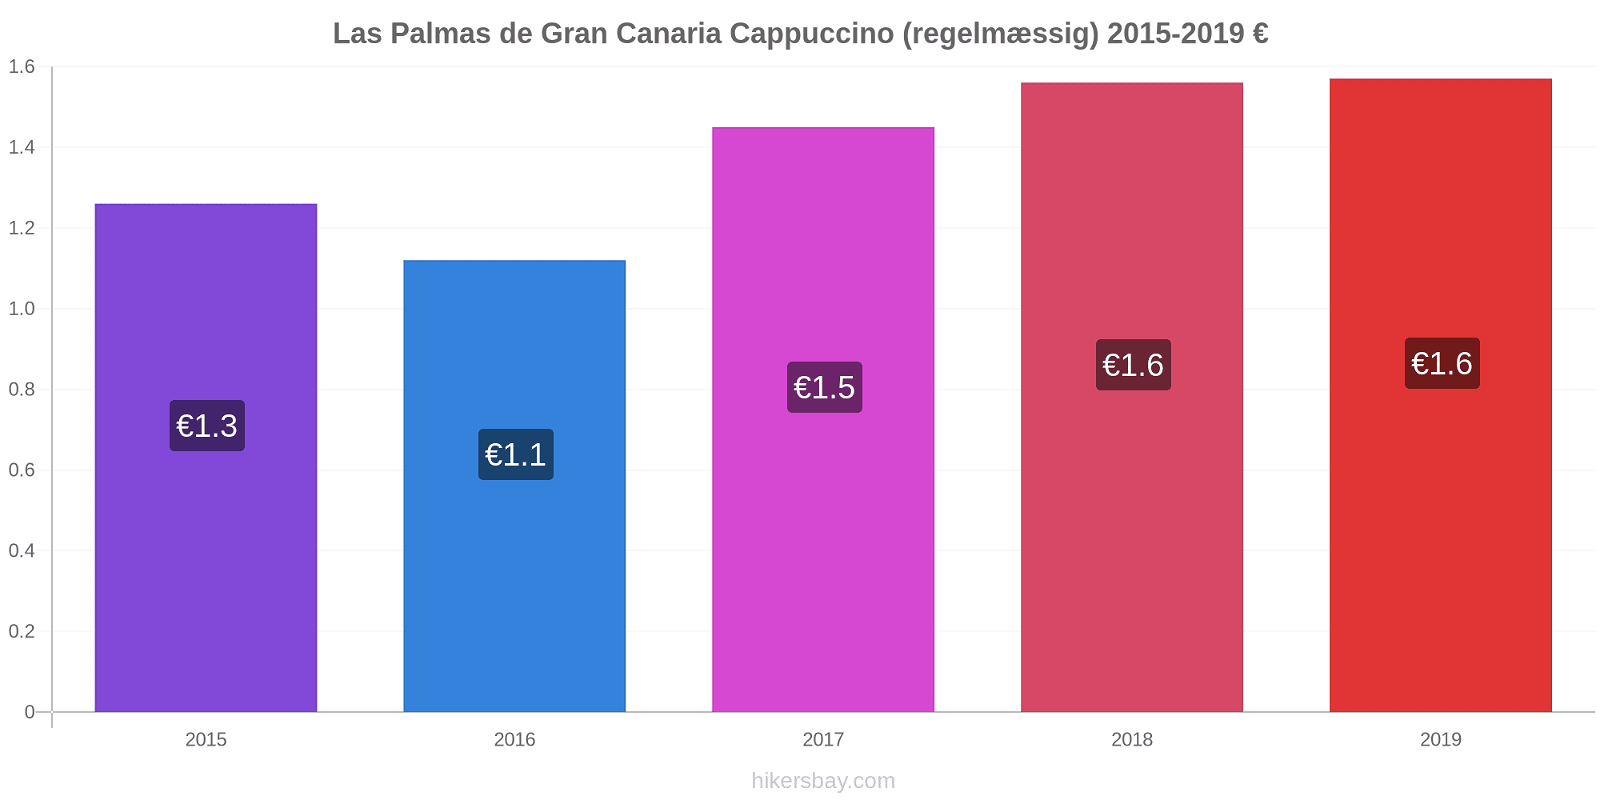 Las Palmas de Gran Canaria prisændringer Cappuccino (regelmæssig) hikersbay.com